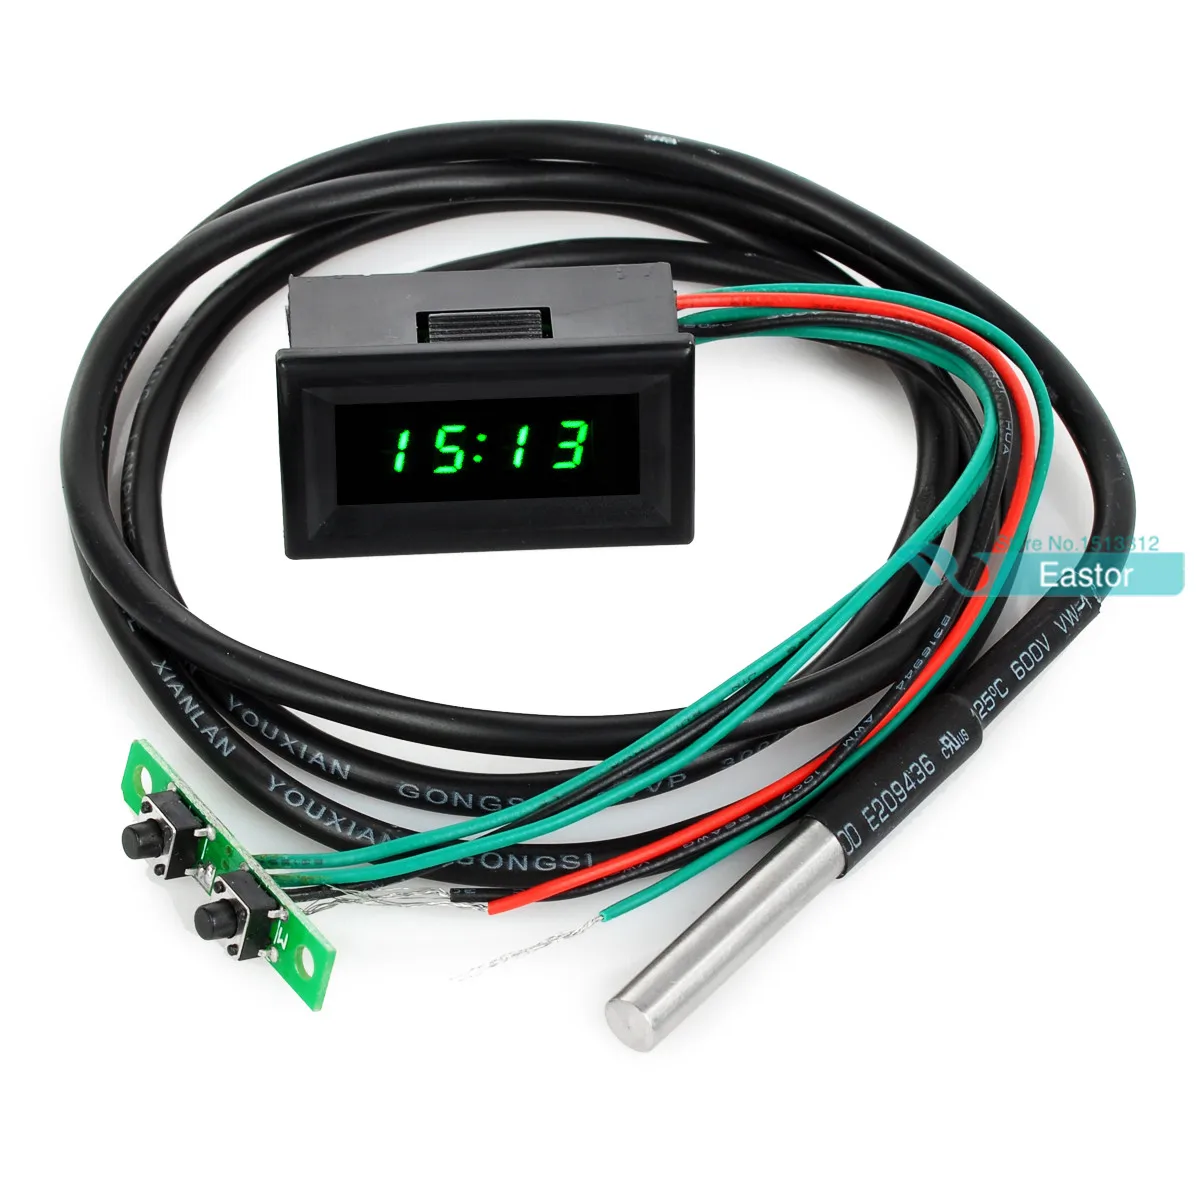 

0.30 Digital DC 0-30V 12V/24V Voltmeter Thermometer Clock 3in1 Meter Gauge with 1 Meter DS18B20 Temperature Sensor Probe Green